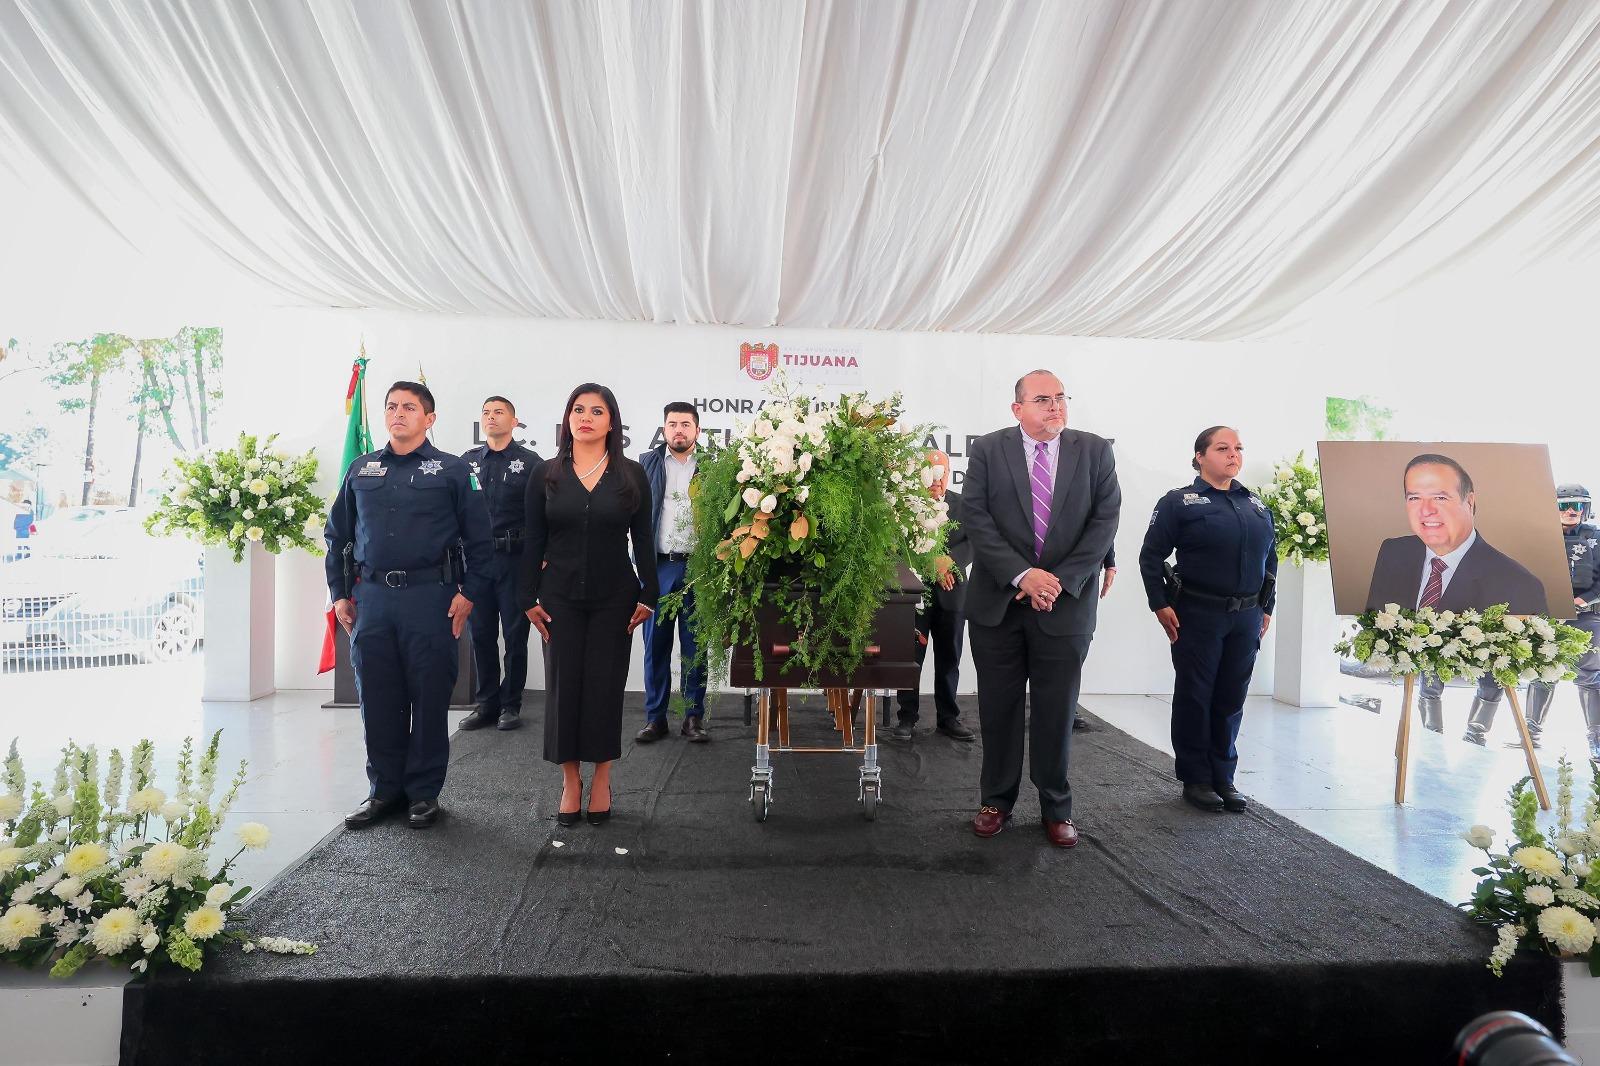 Montserrat Caballero honra a Luis Arturo González Cruz en solemne ceremonia en Tijuana